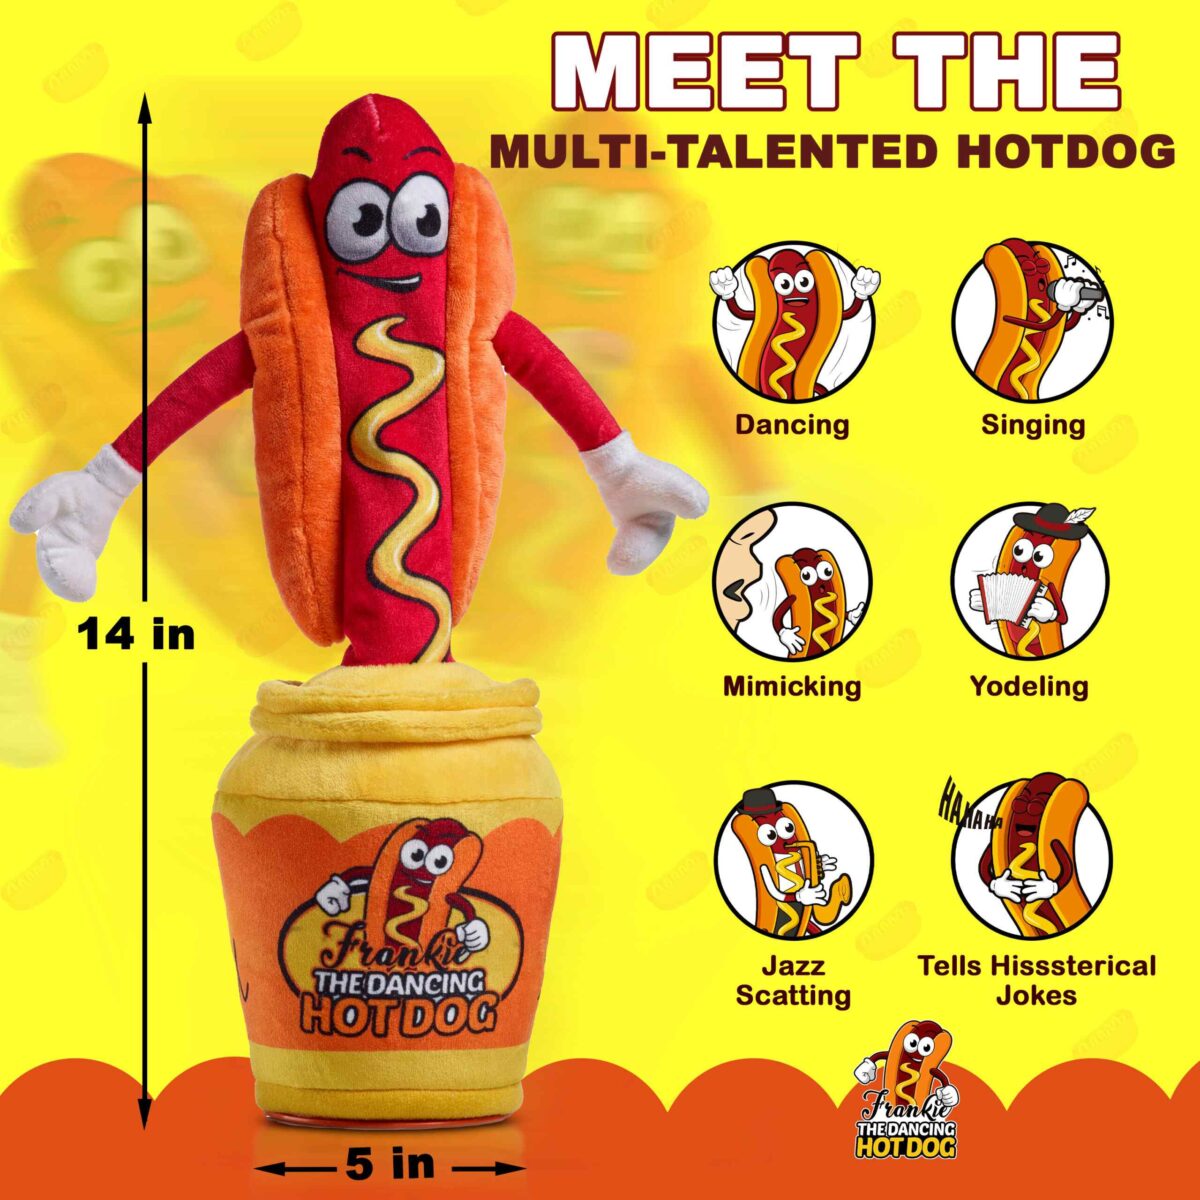 "dancing hotdog dancing hotdog plush hot dog dancing hotdog dancing dancing hot dogs"